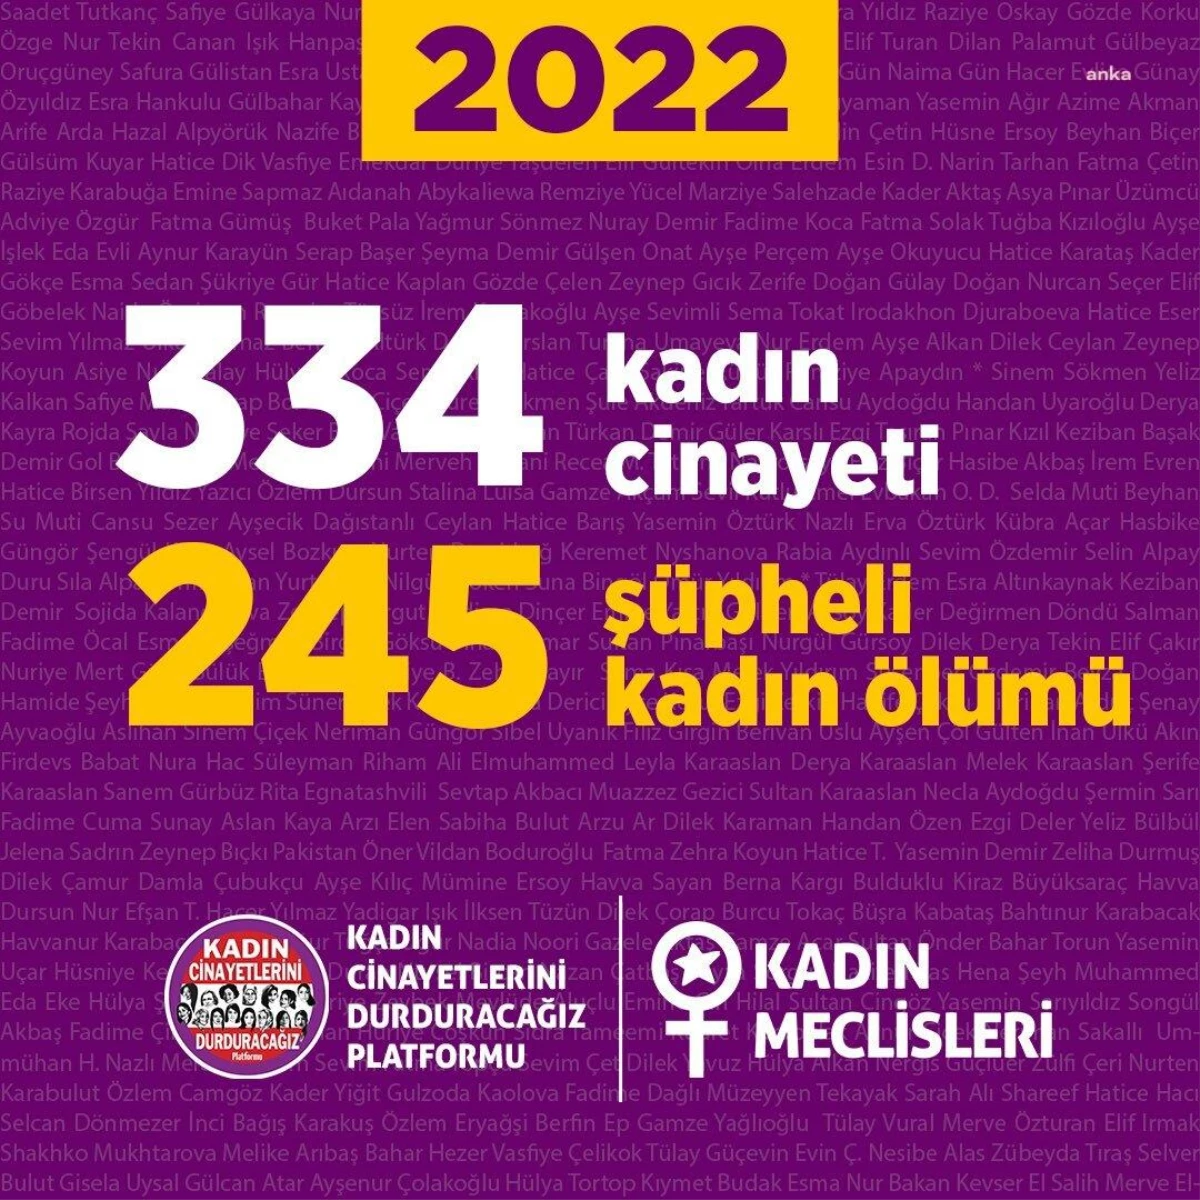 Kadın Cinayetlerini Durduracağız Platformu: 2022 Yılında 334 Kadın Cinayete Kurban Gitti, 245 Kadın Şüpheli Şekilde Öldü